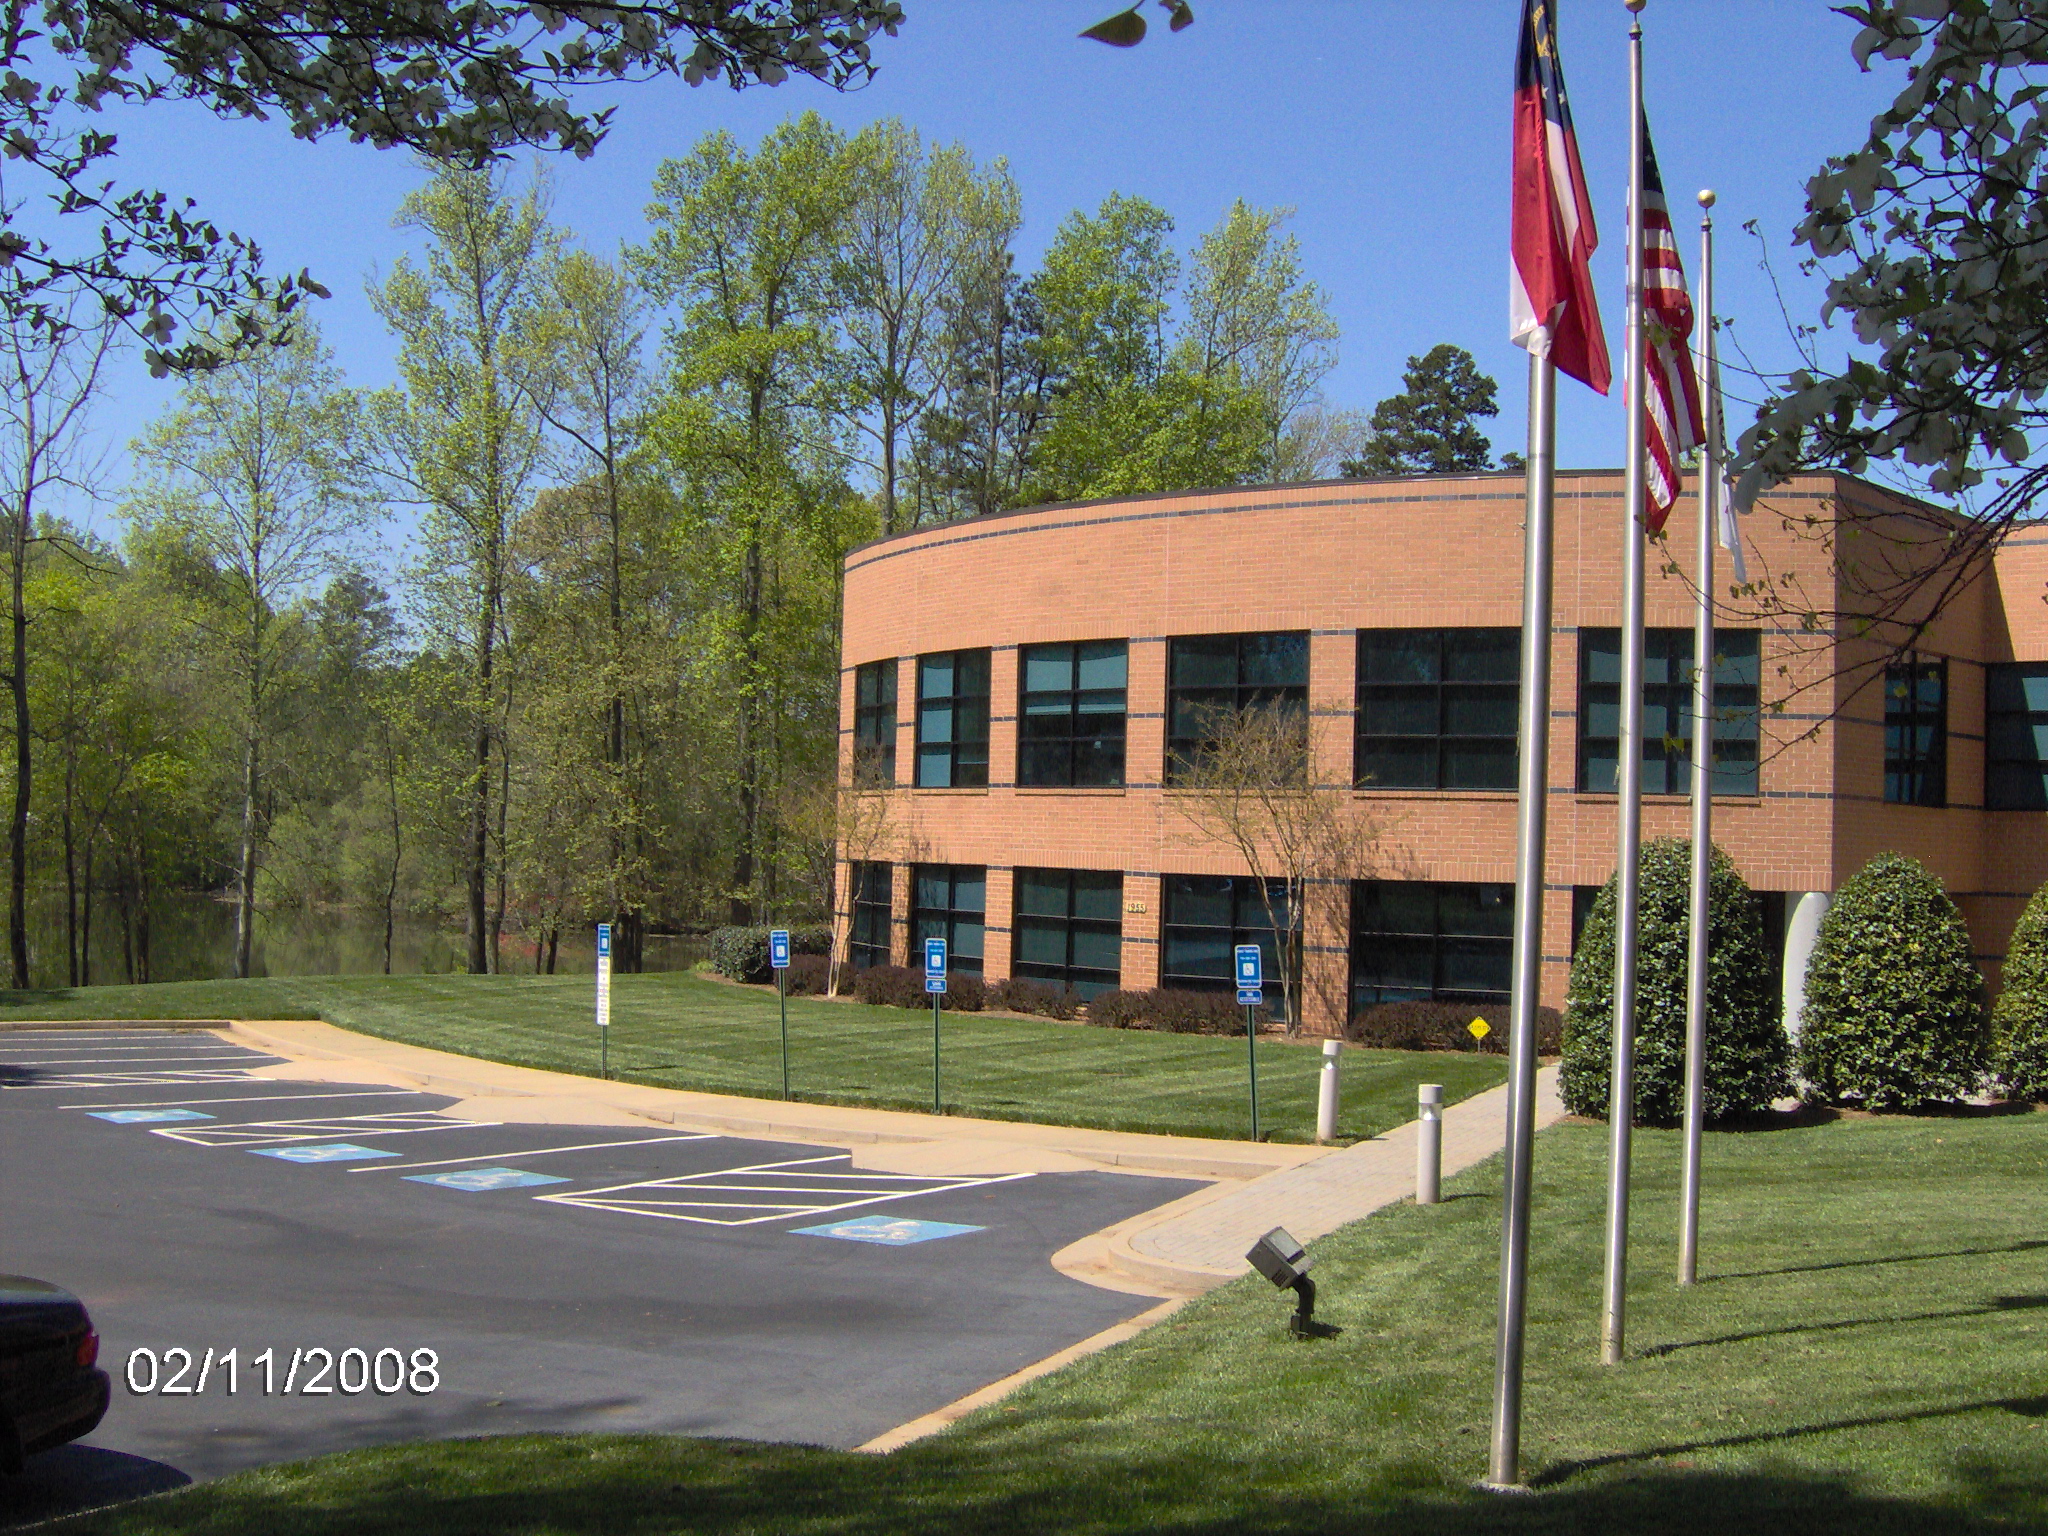 CribMaster headquarters located in Marietta, GA